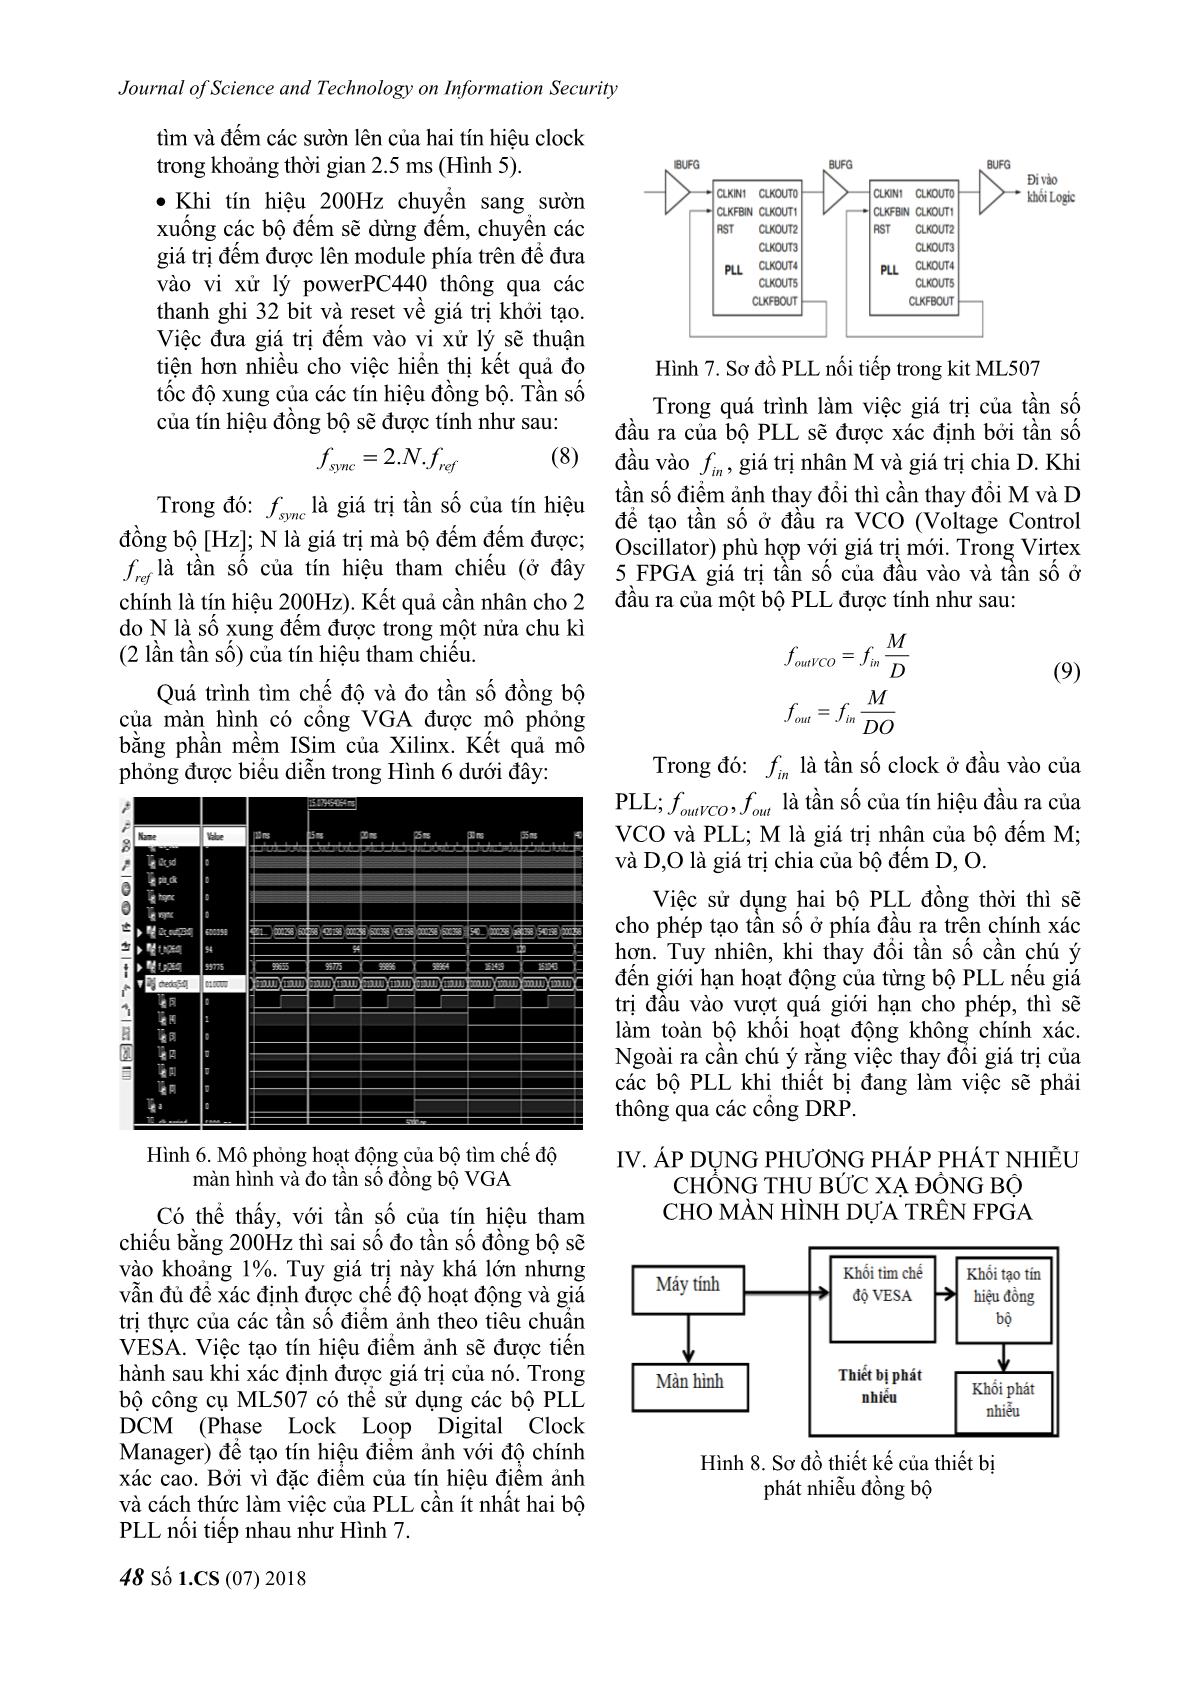 Phương pháp phát nhiễu đồng bộ chống thu bức xạ kênh kề phát ra từ màn hình máy tính dựa trên công nghệ FPGA trang 5